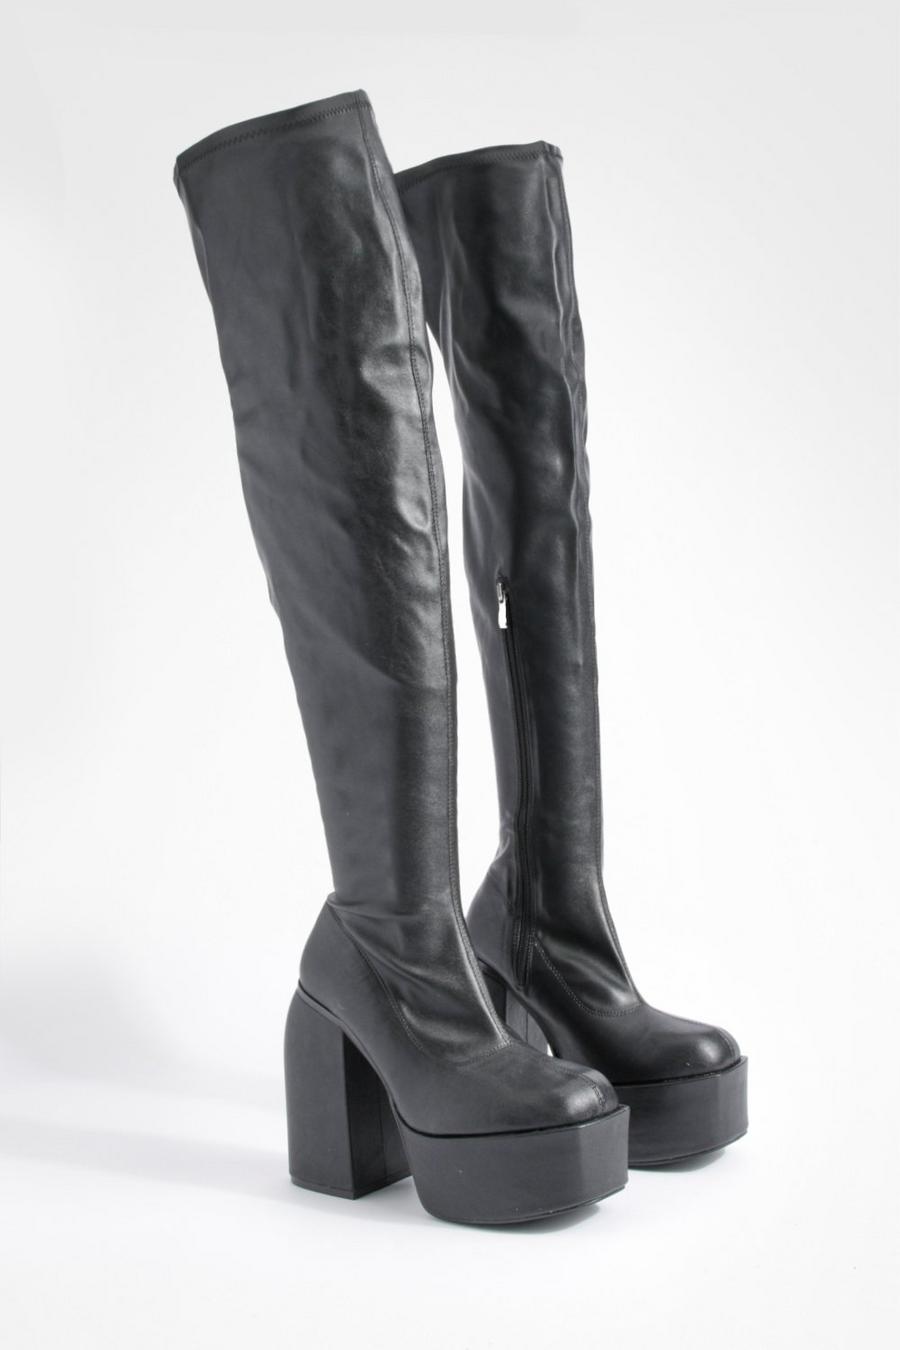 Botas de caña alta y cuero sintético elásticas con plataforma y tacón grueso, Black